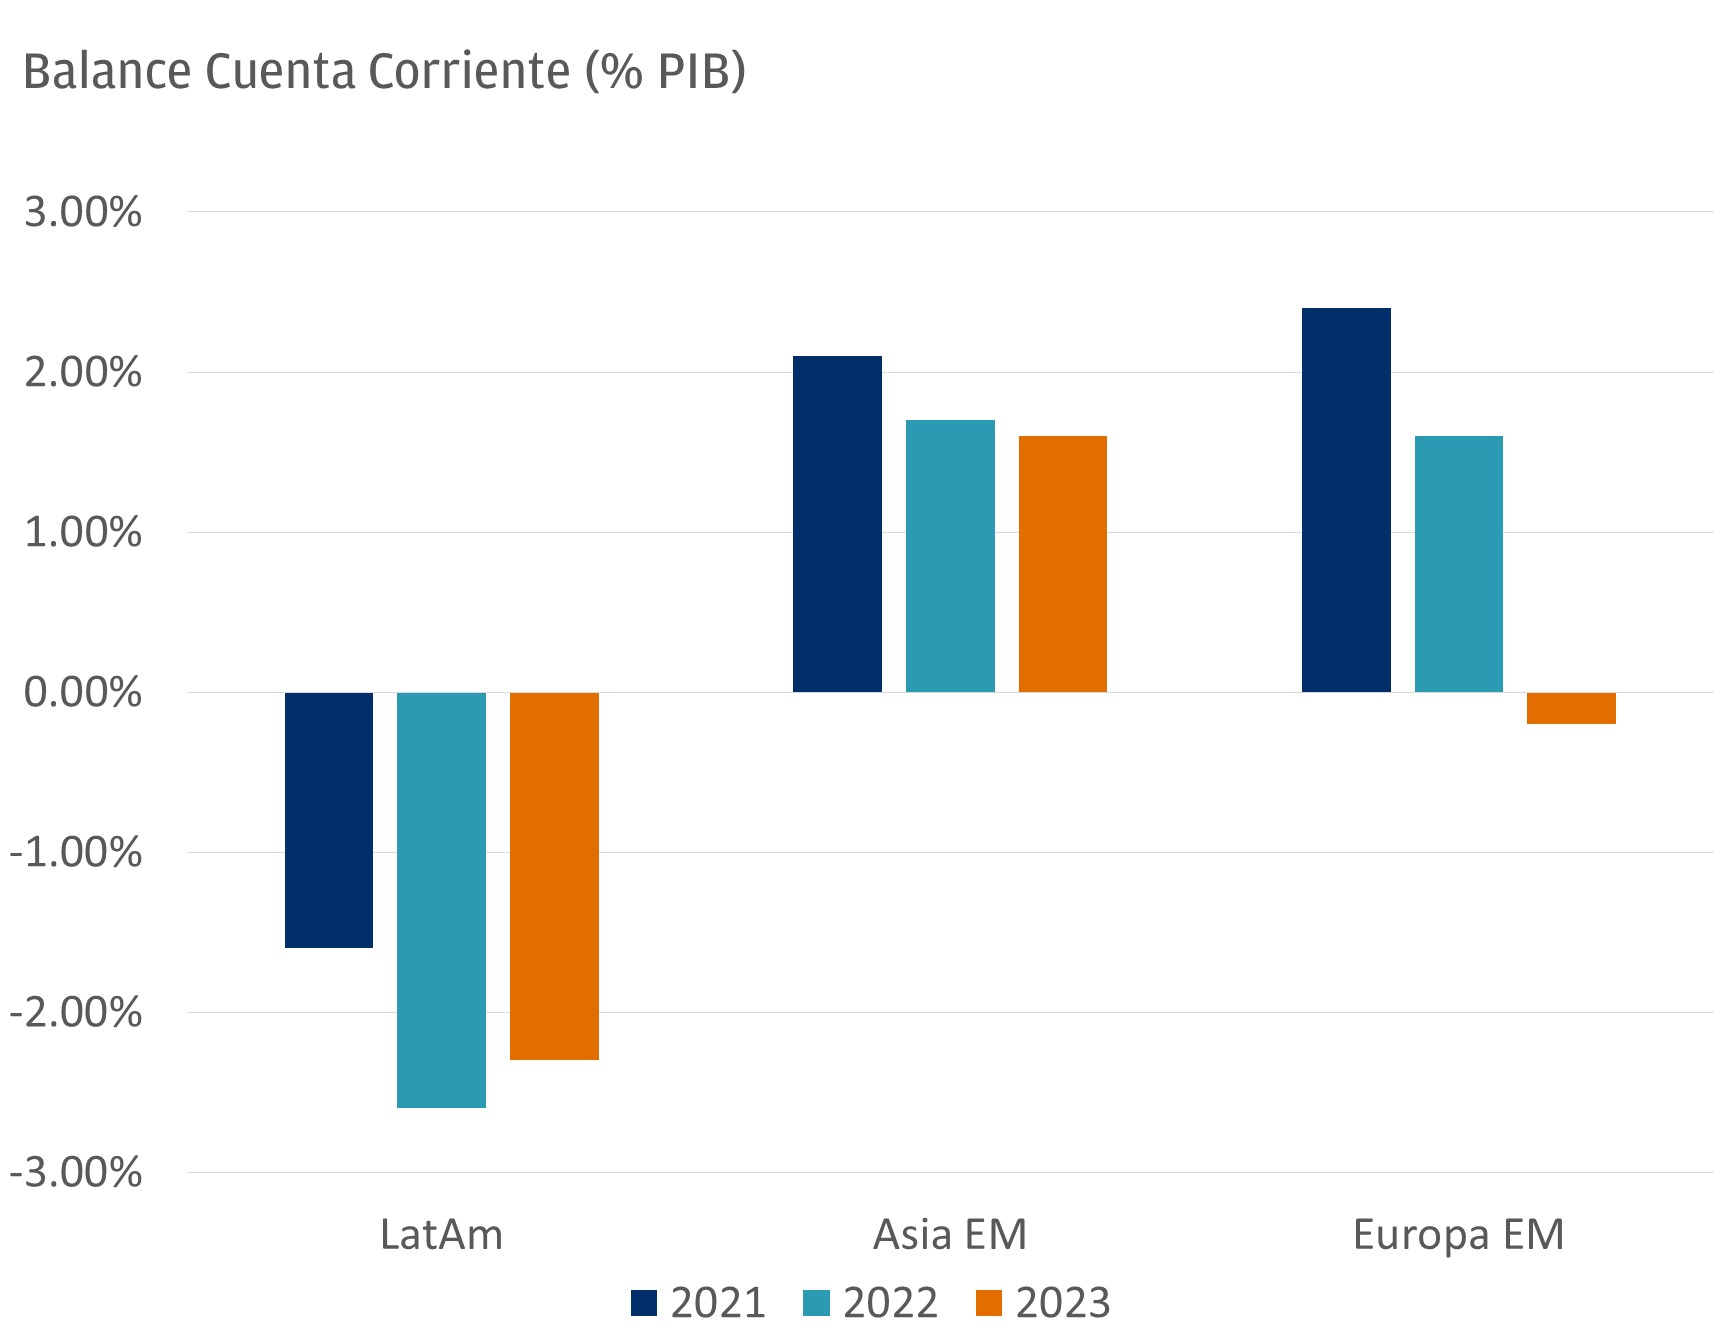 Este gráfico describe el balance anual de la cuenta corriente, en términos de porcentaje, de tres regiones: América Latina EM, Asia EM y Europa EM, para los años 2021, 2022 y 2023.